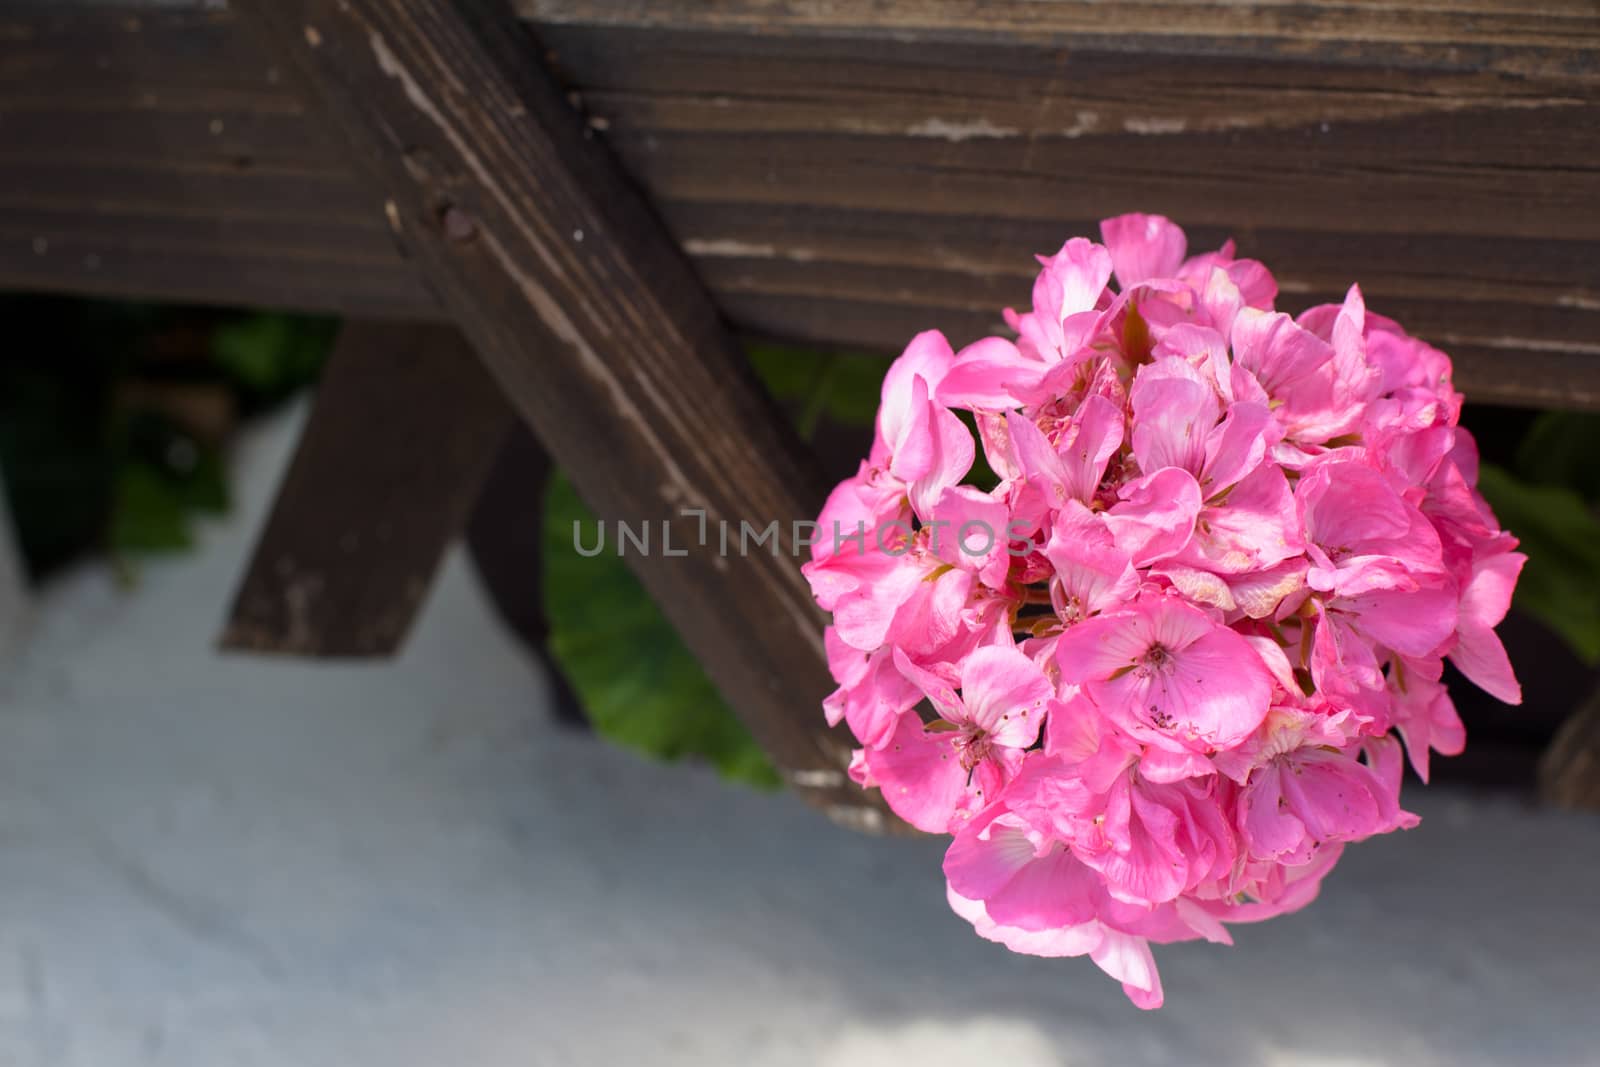 Round pink flower in wooden trellis
